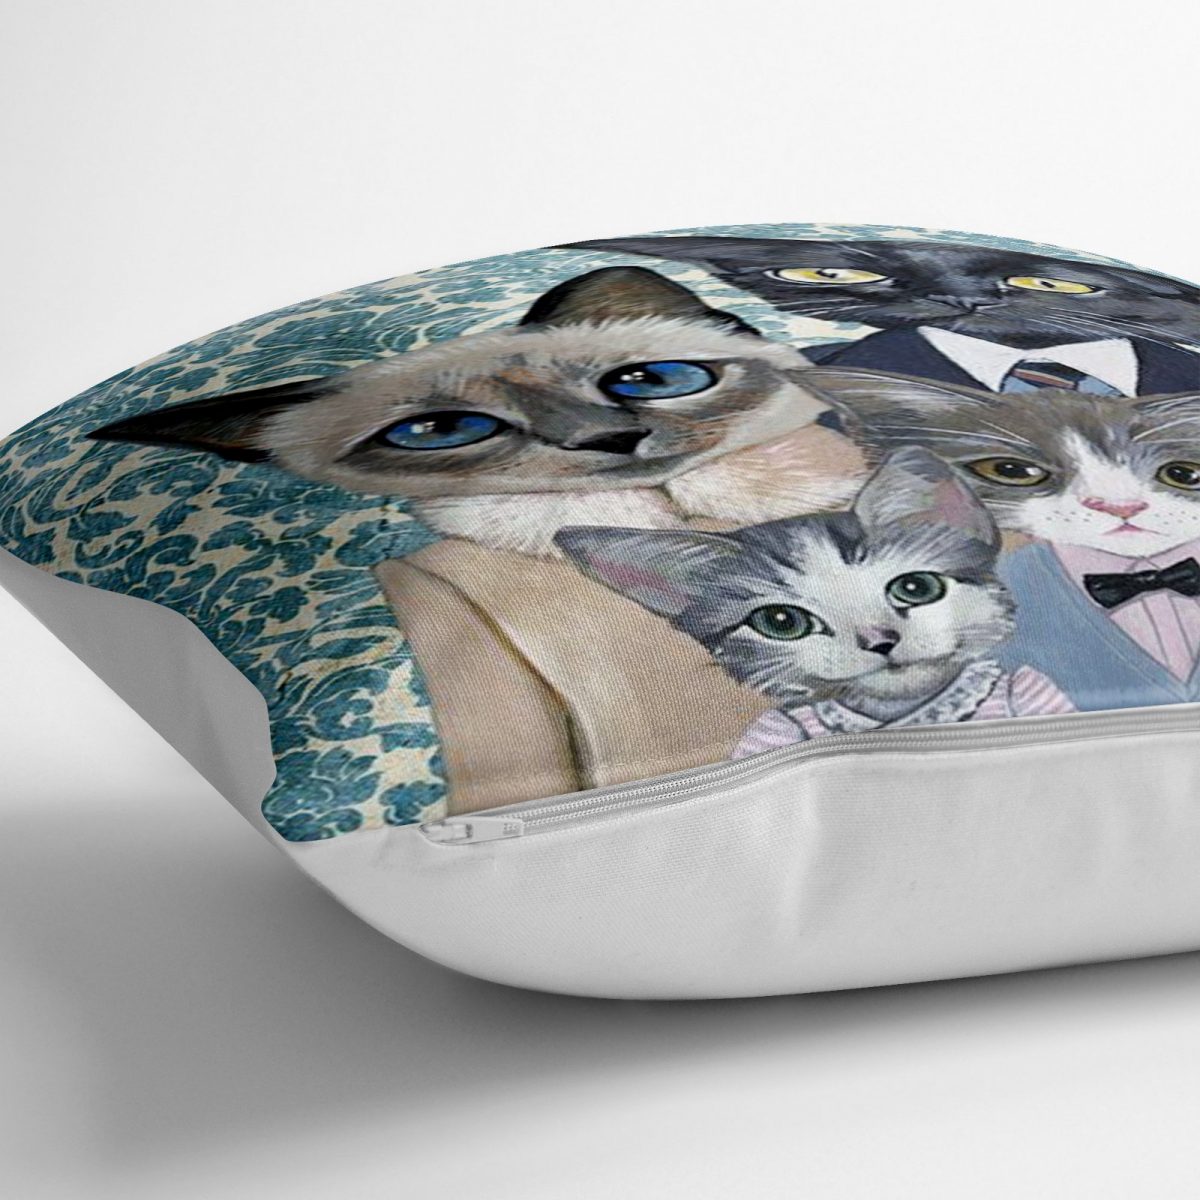 Modern Tasarım Kedi Ailesi Dijital Baskılı Dekoratif Kedi & Hayvan Minderi - 70 x 70 cm Realhomes